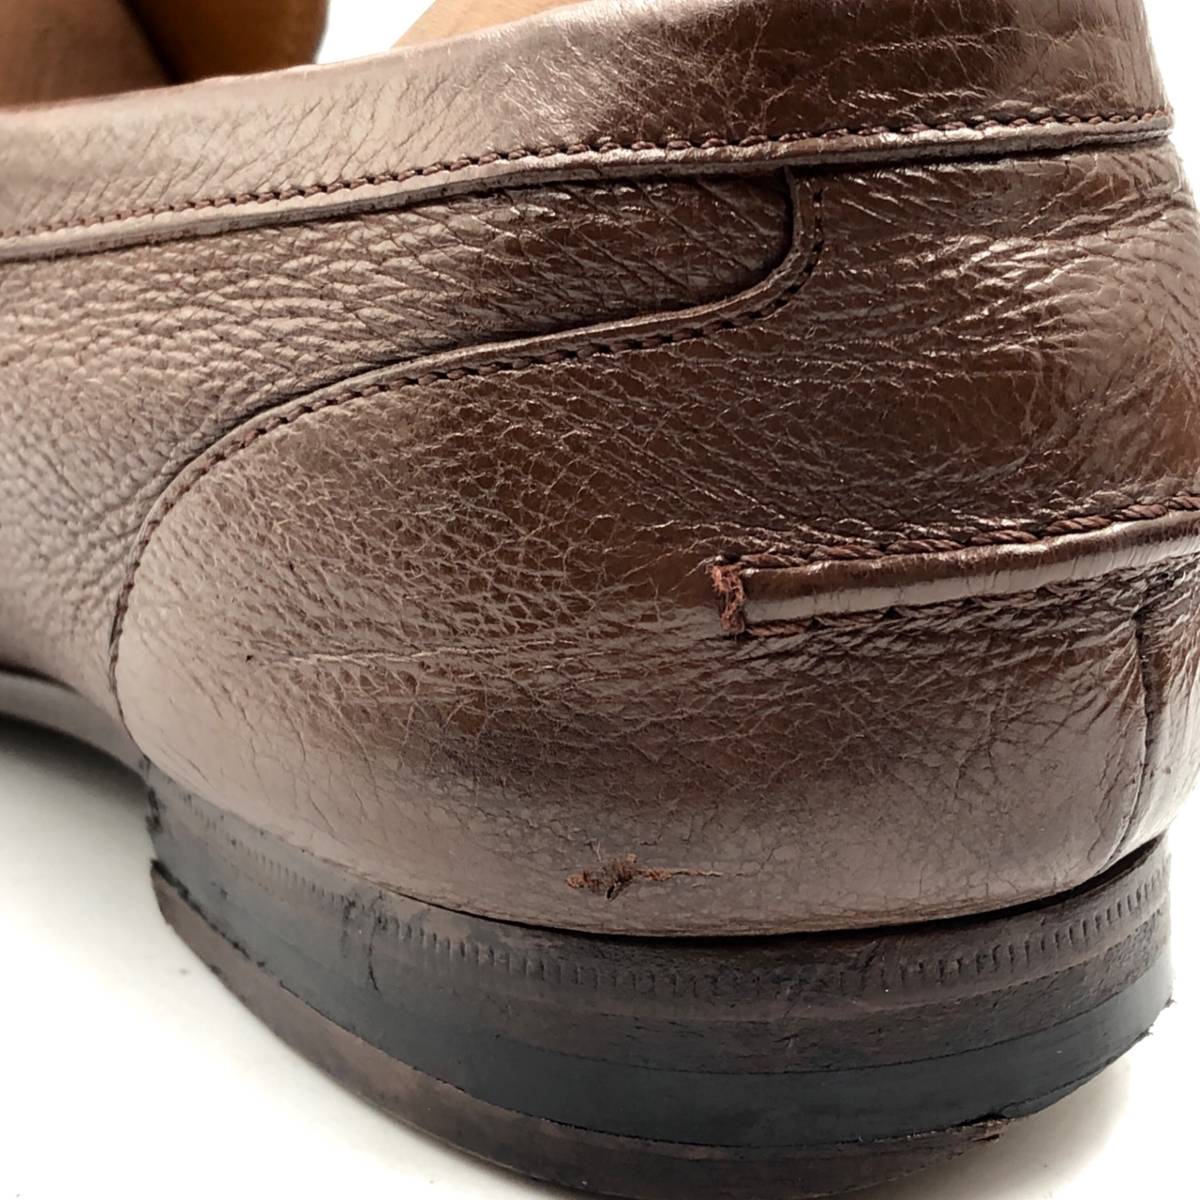 即決 GUCCI グッチ 25.5cm 7.5 256577 メンズ レザーシューズ ビットローファー 茶 ブラウン 革靴 皮靴 ビジネスシューズ